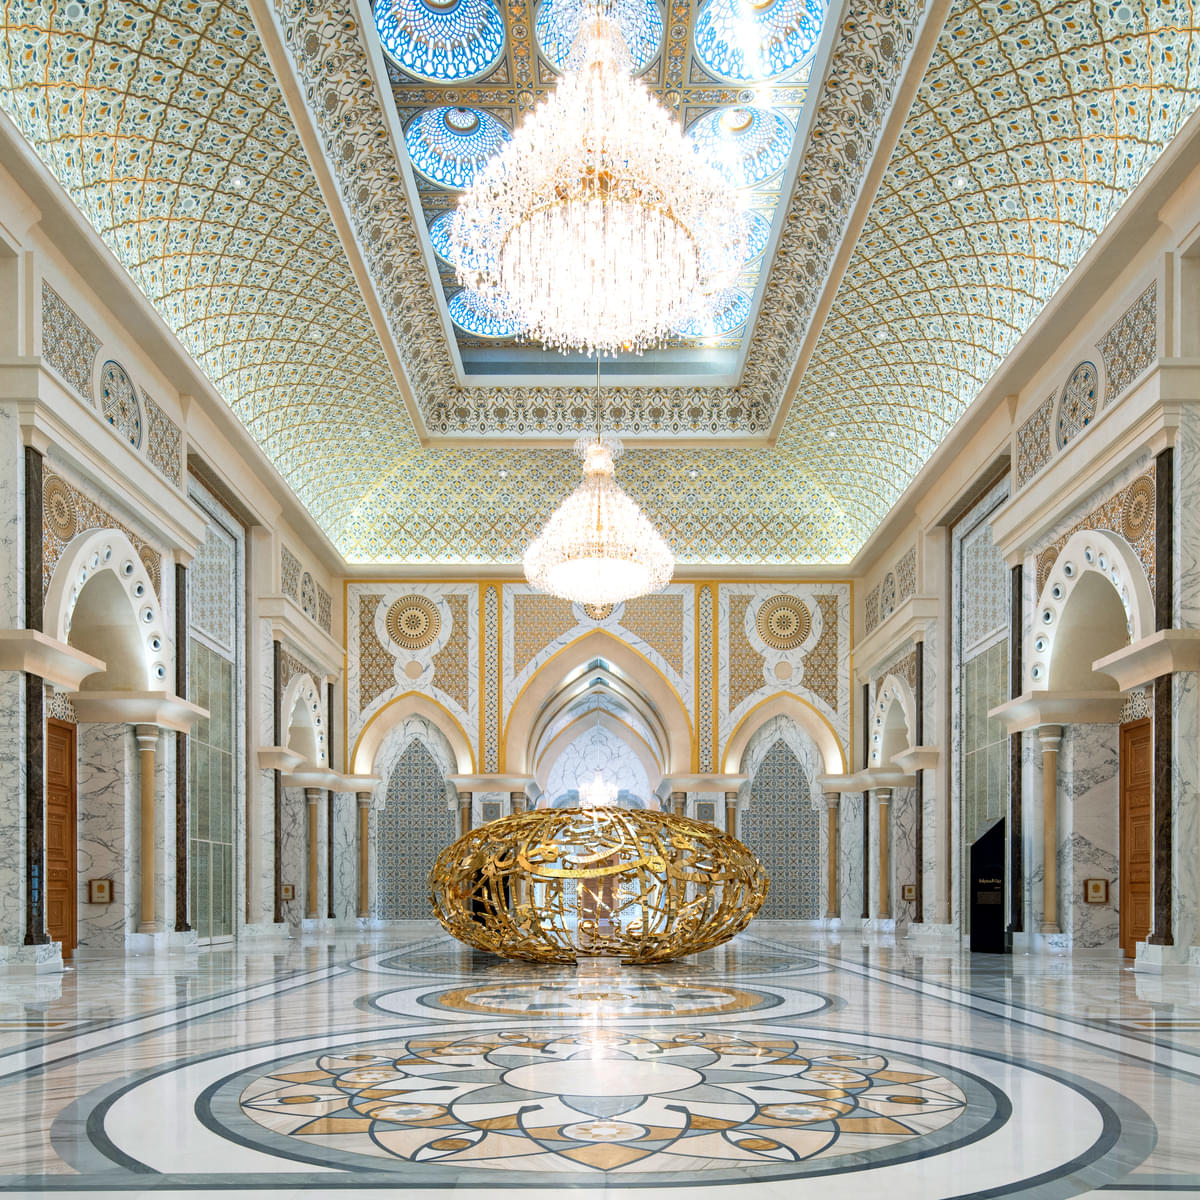  Indulge in the lap of luxury at Qasr Al Watan, where grandeur meets elegance